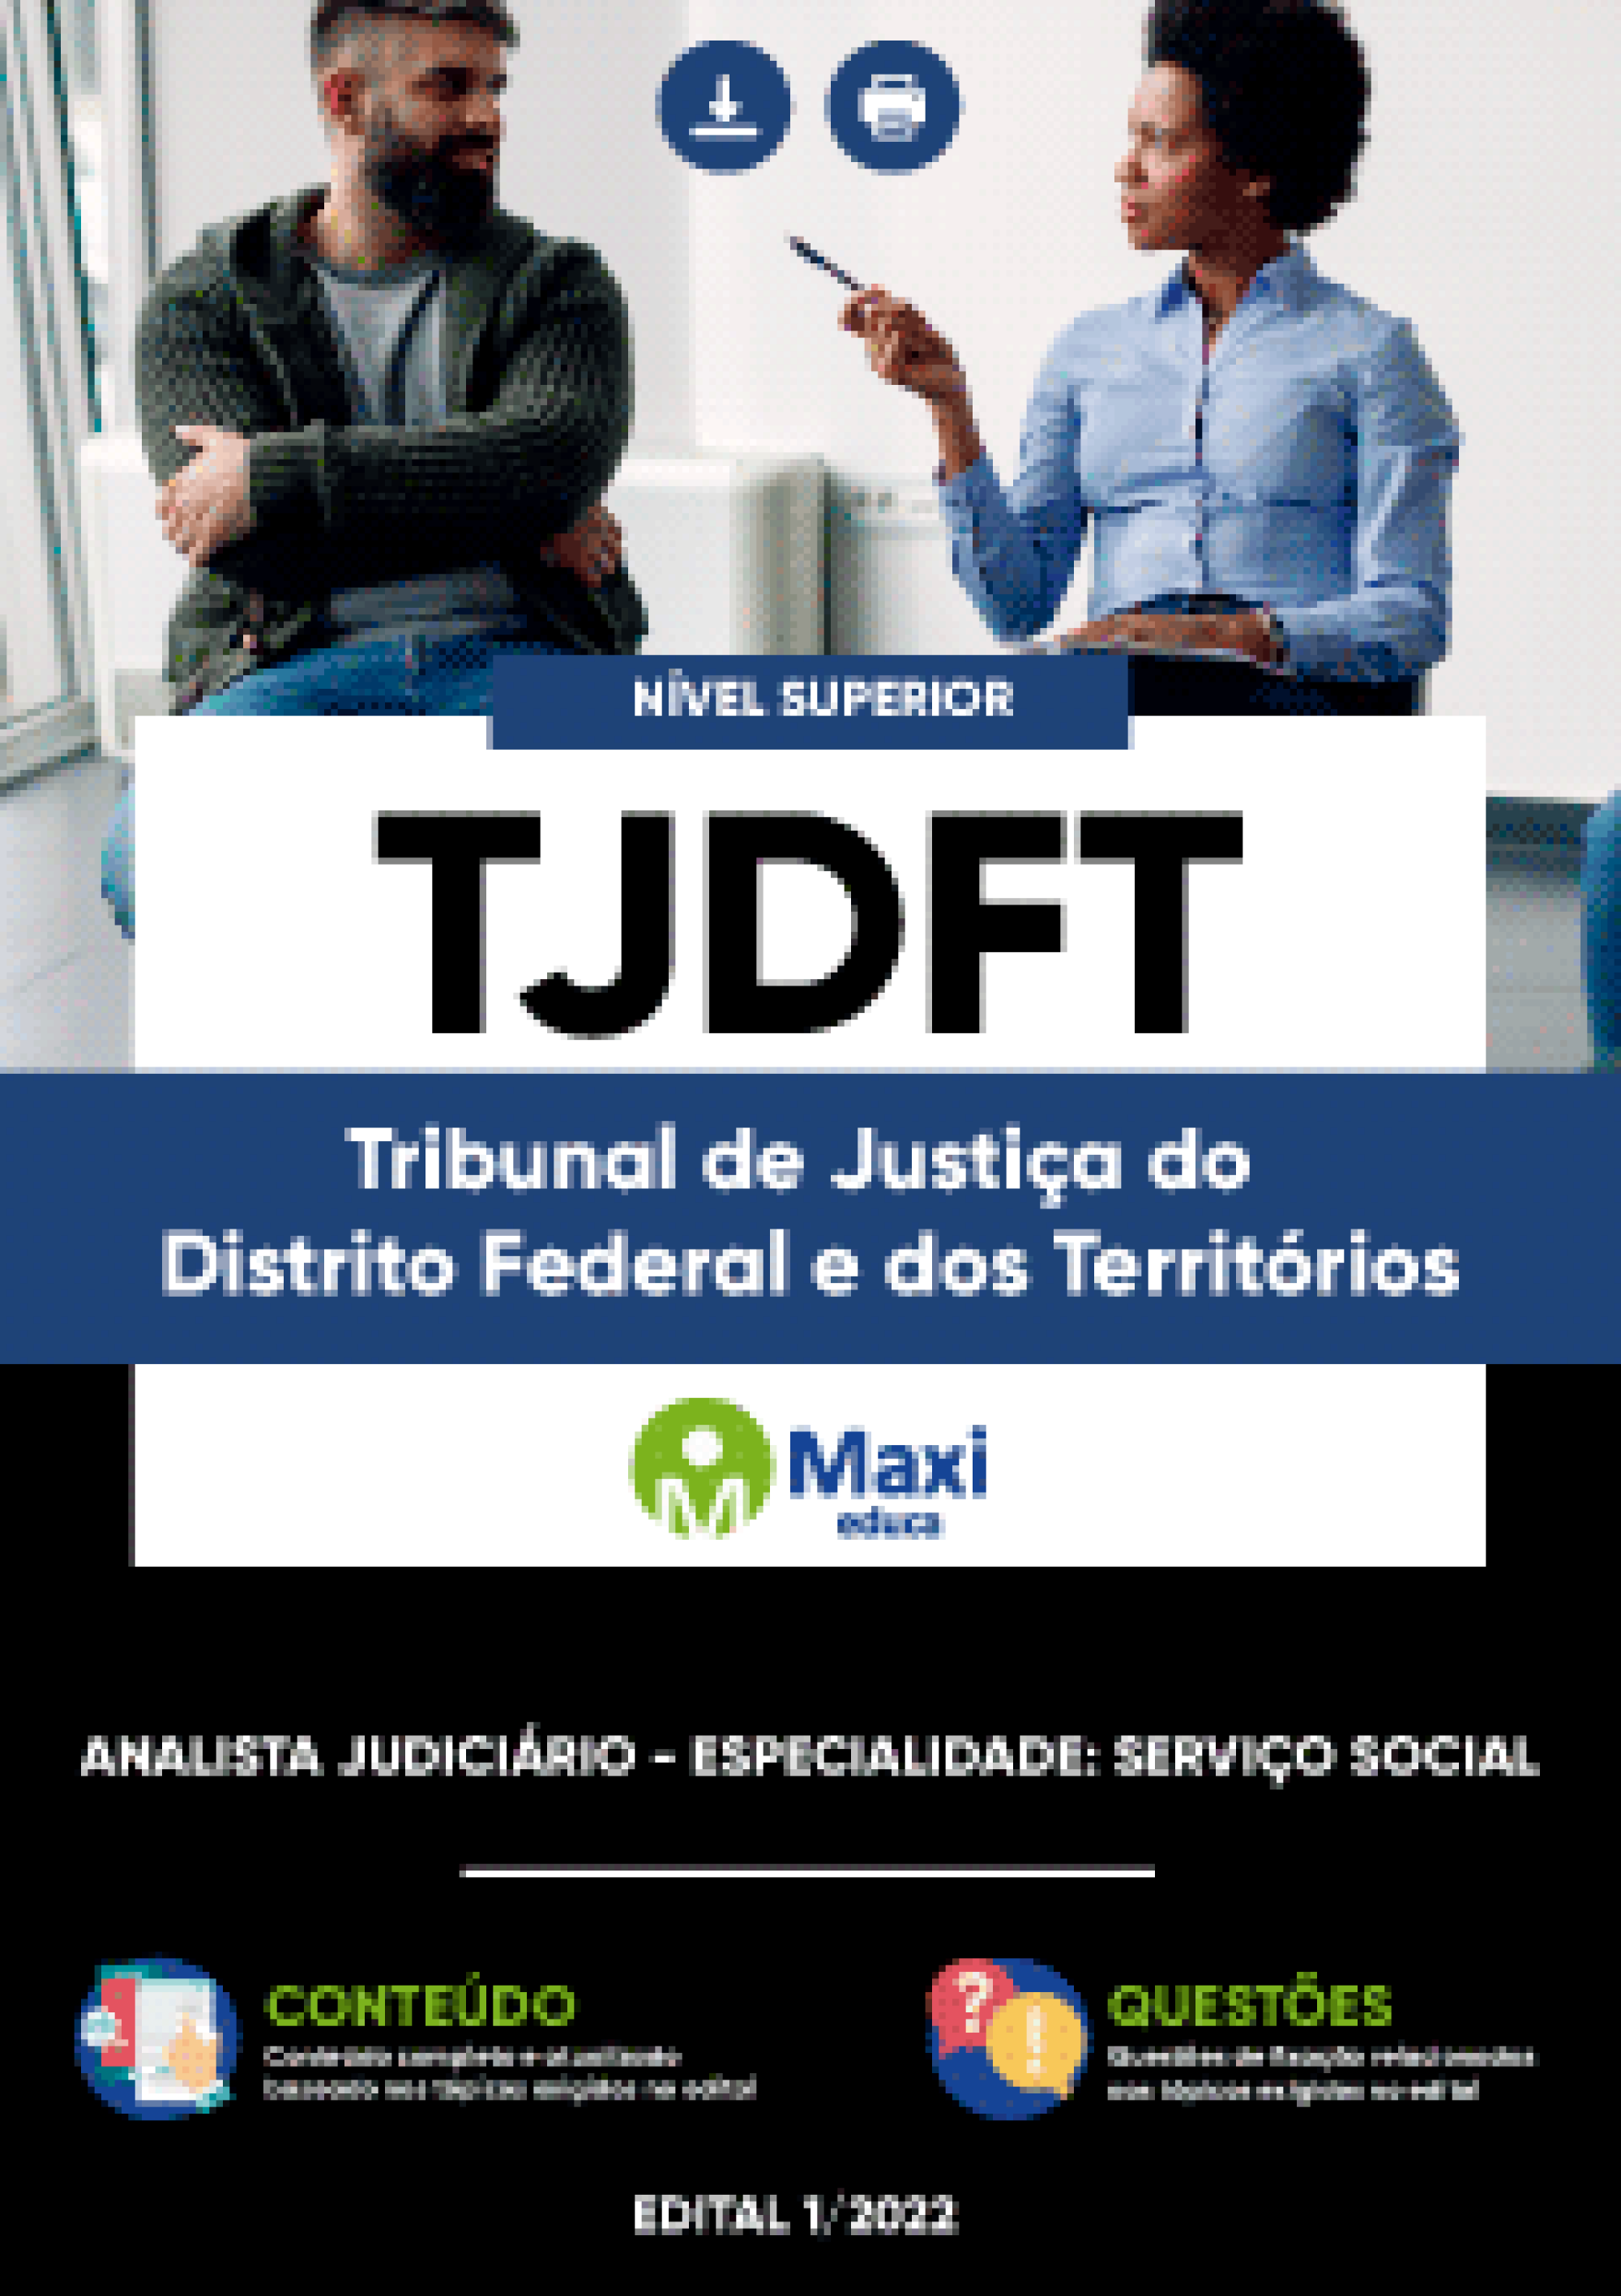 Apostila Digital em PDF do Tribunal de Justiça do Distrito Federal e dos Territórios - TJDFT